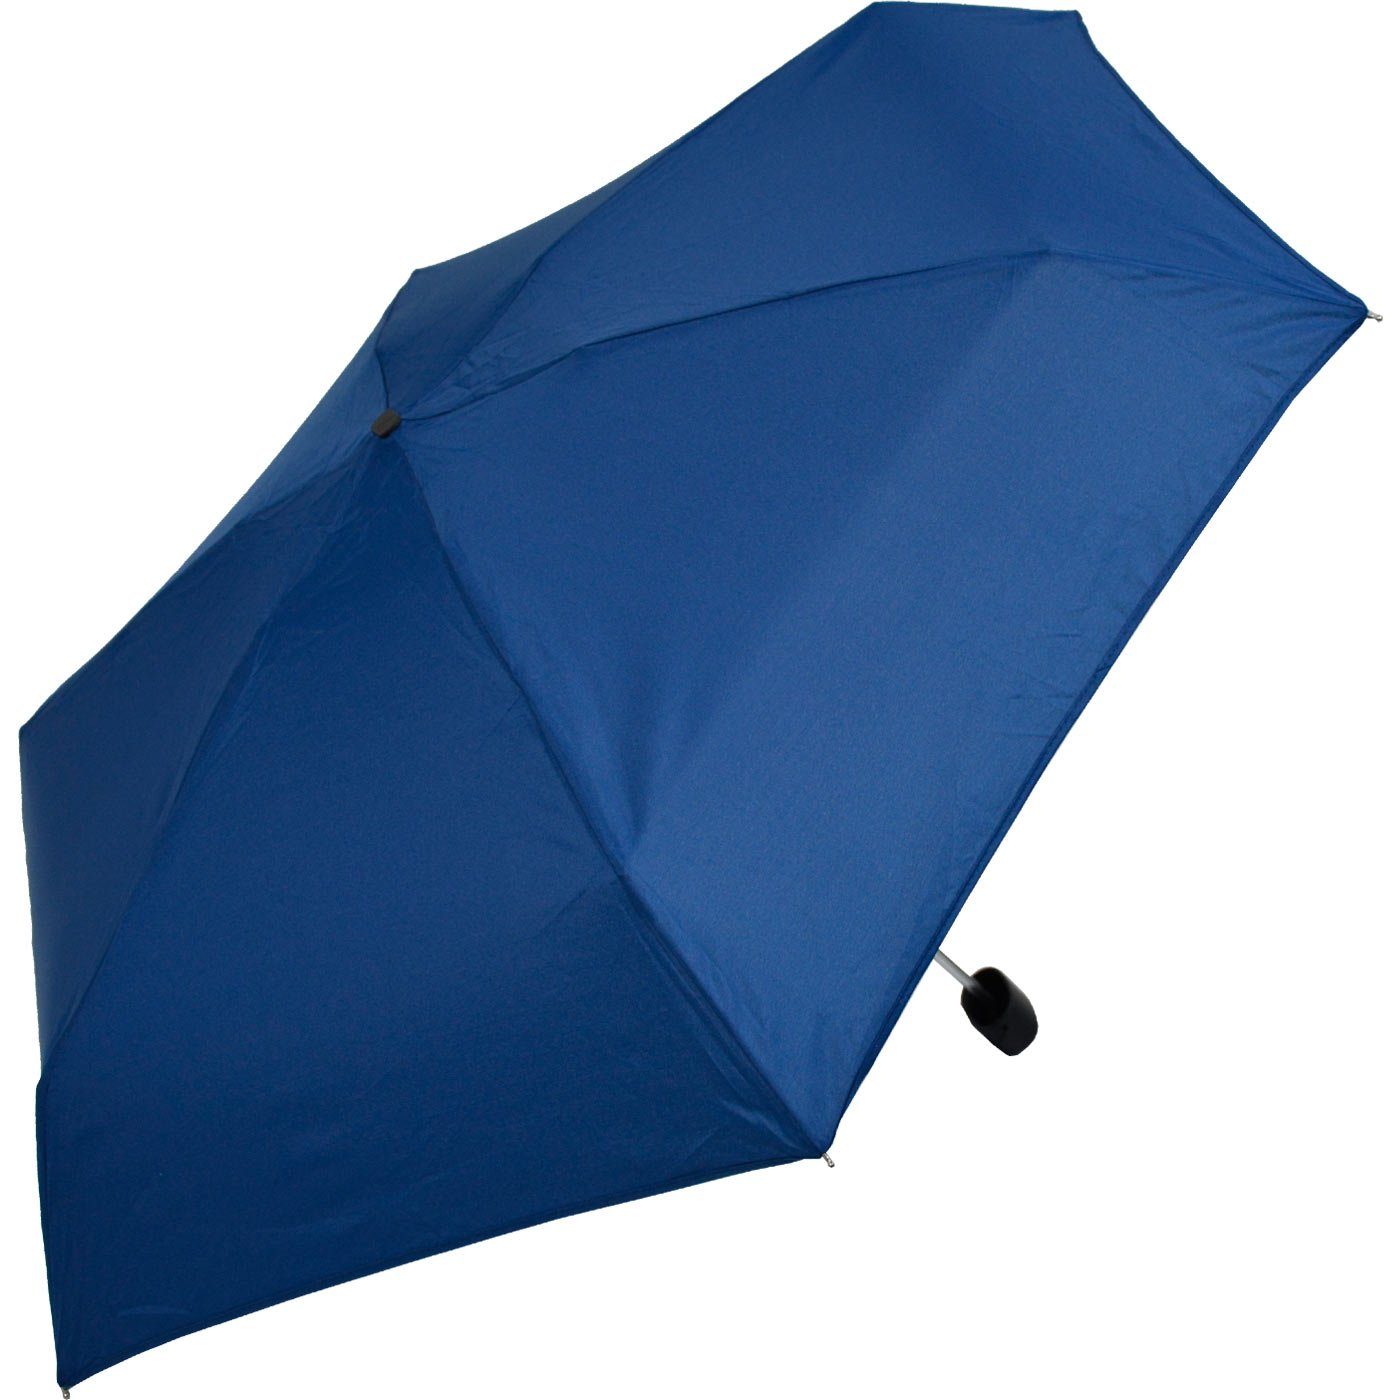 iX-brella Taschenregenschirm Super-Mini-Schirm - im Regenschirm Etui, klein winziger